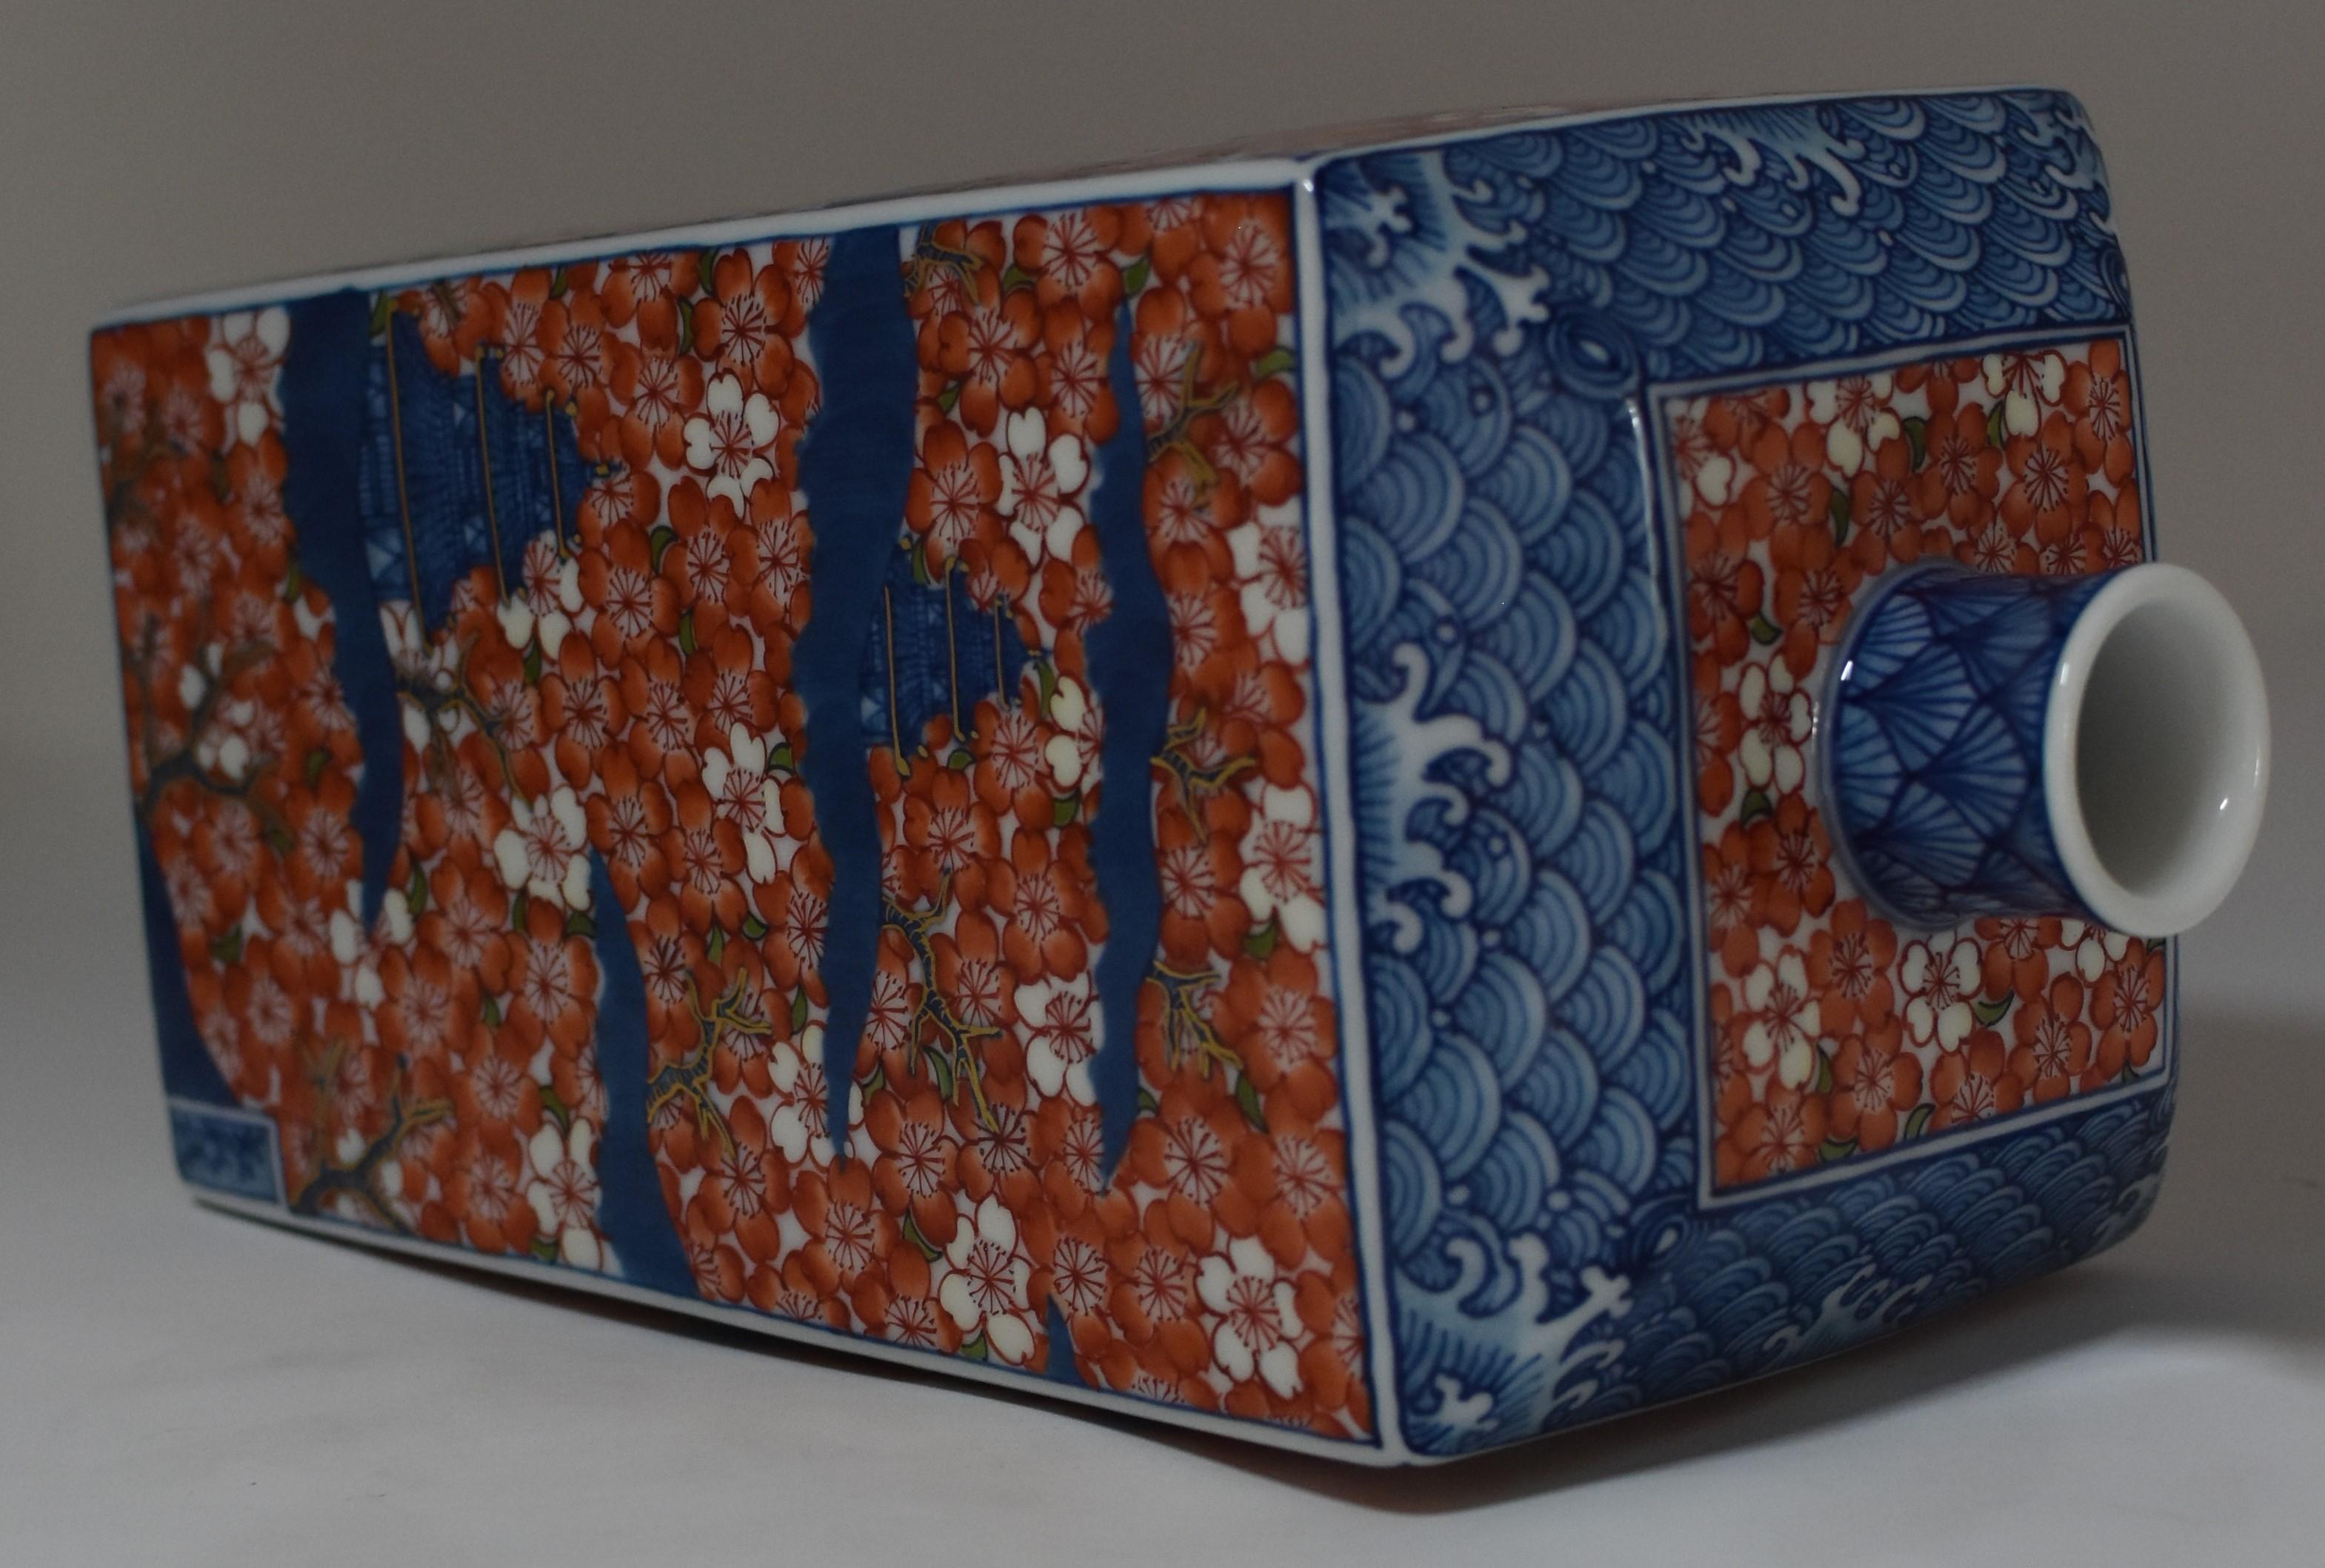 Japanese Contemporary Imari Red Blue Porcelain Vase by Master Artist (21. Jahrhundert und zeitgenössisch)